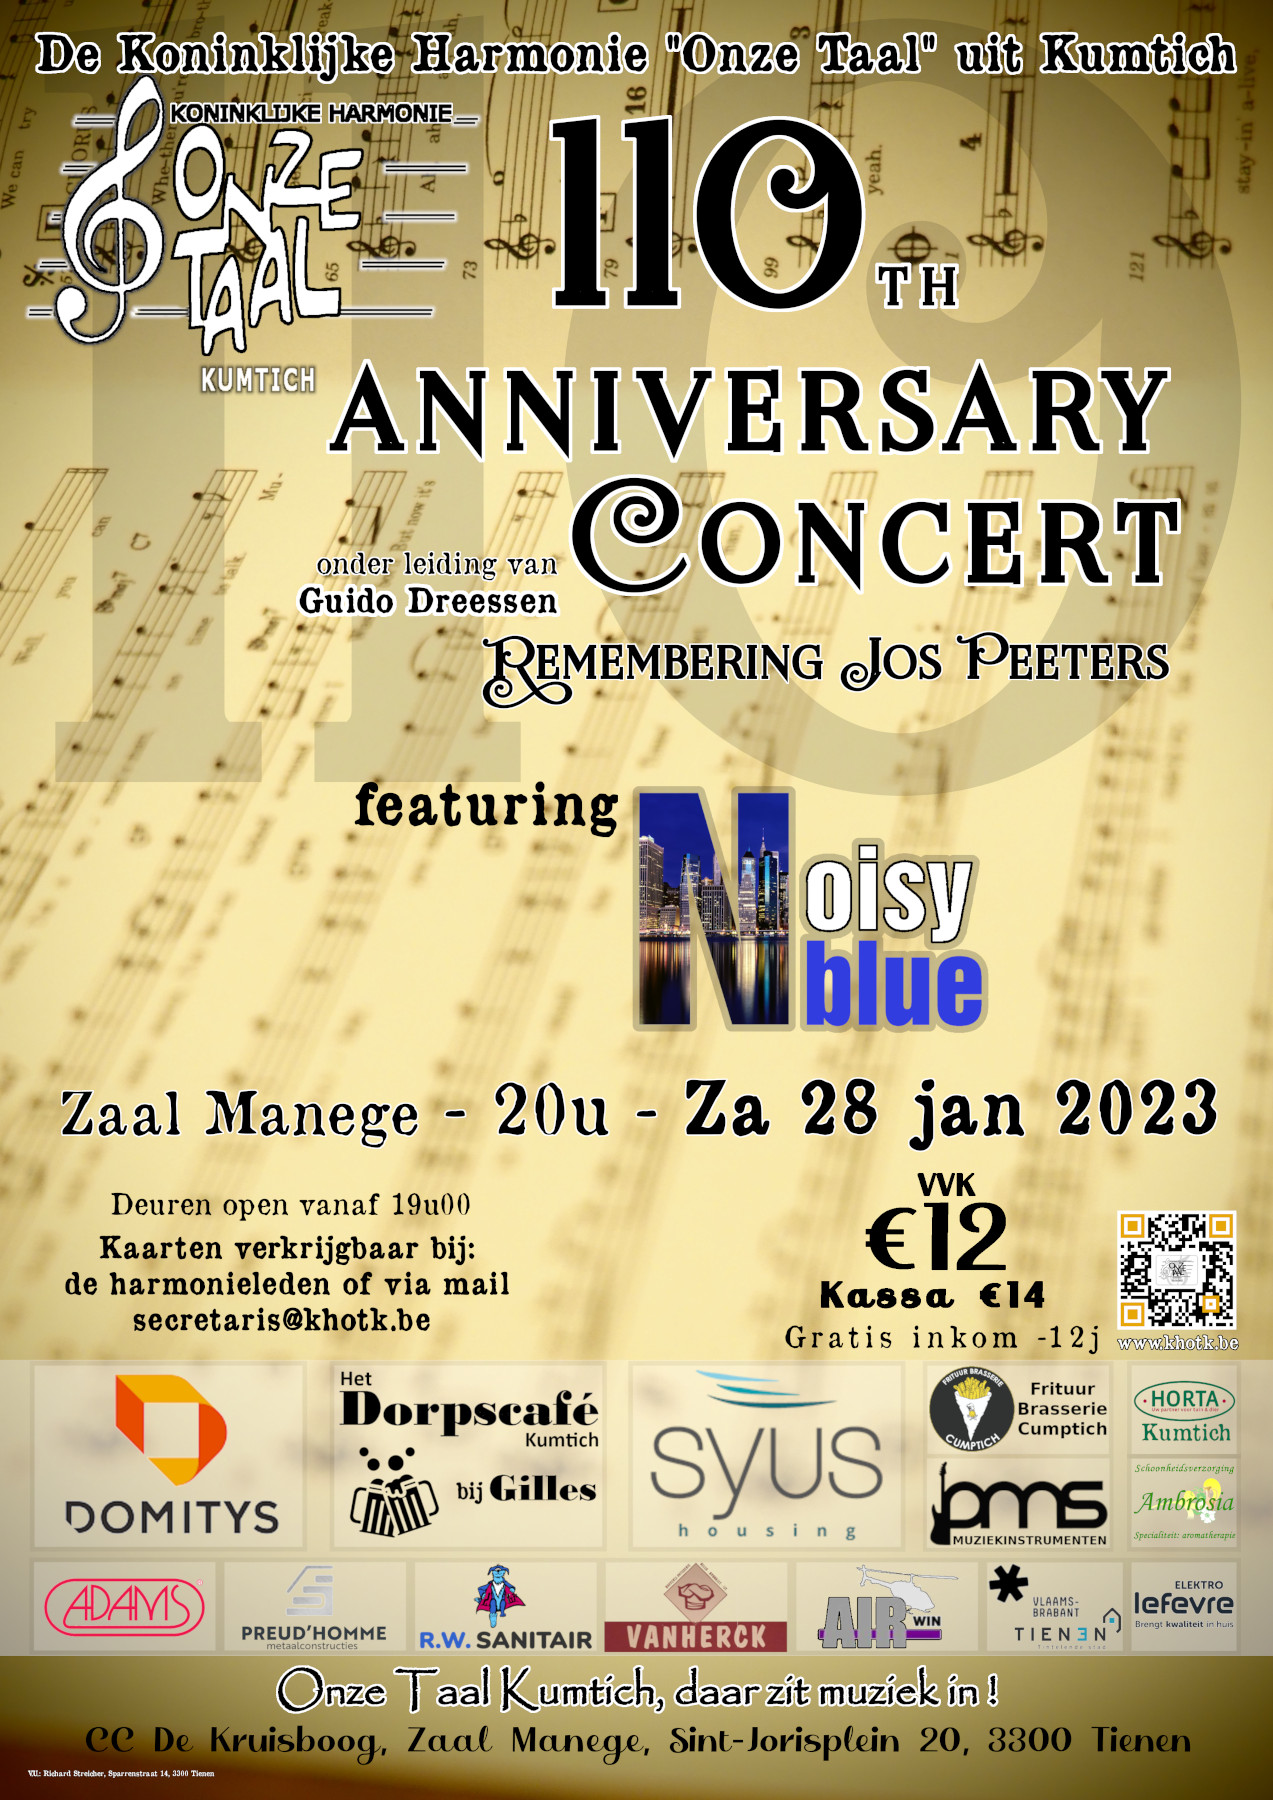 110 anniversary concert - 28 januari 2023